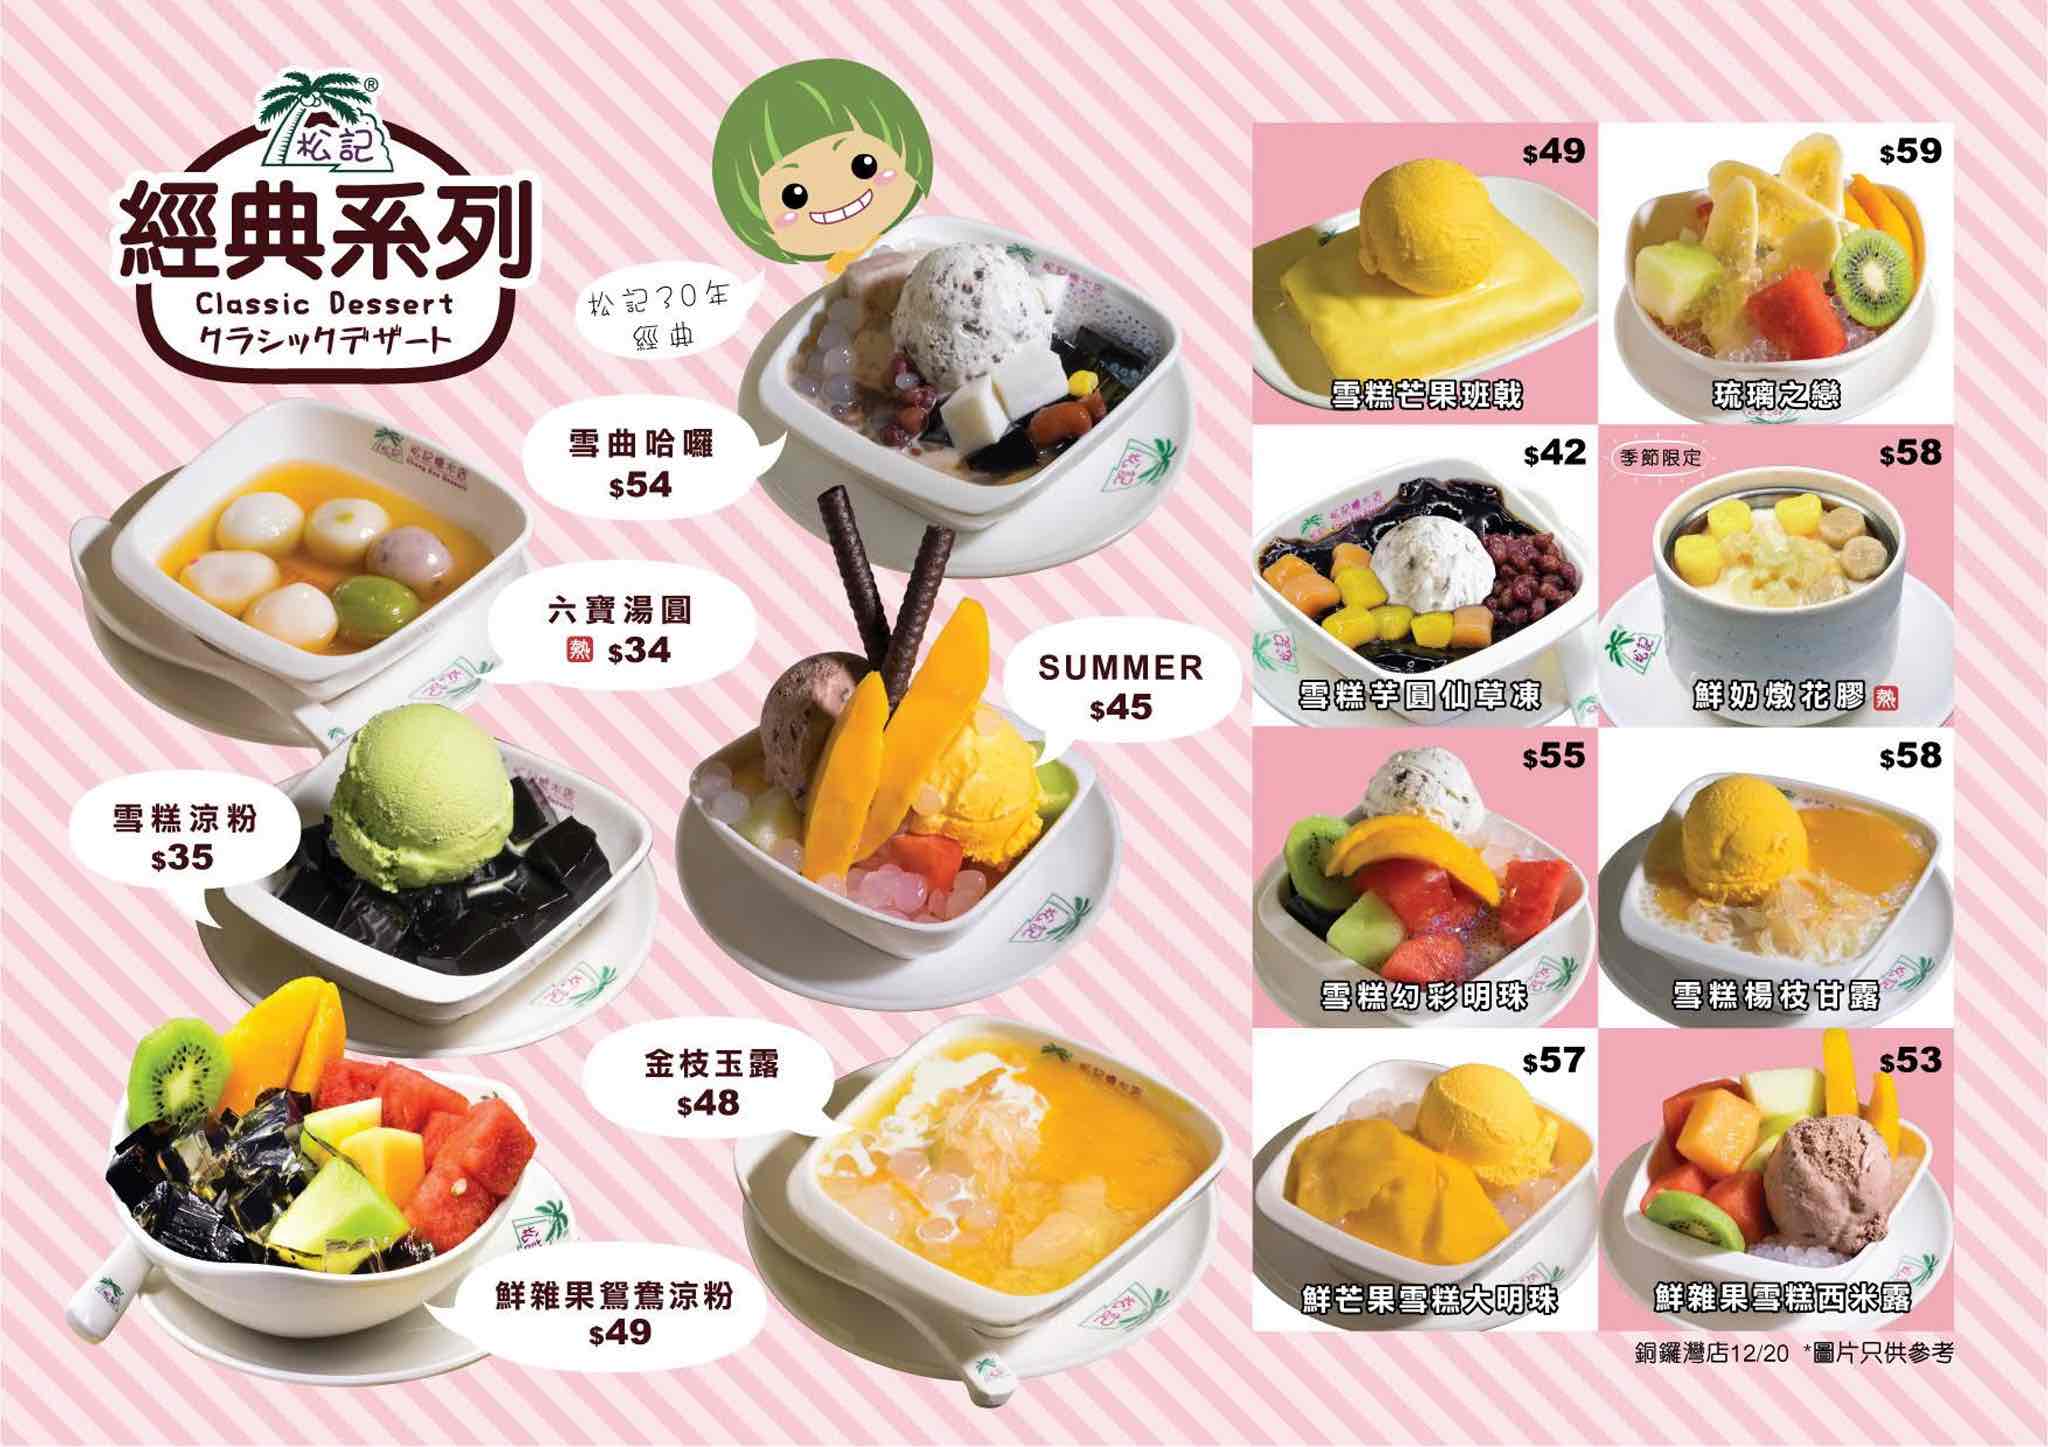 松記糖水店 ChungKee Dessert的特許經營香港區加盟店項目7